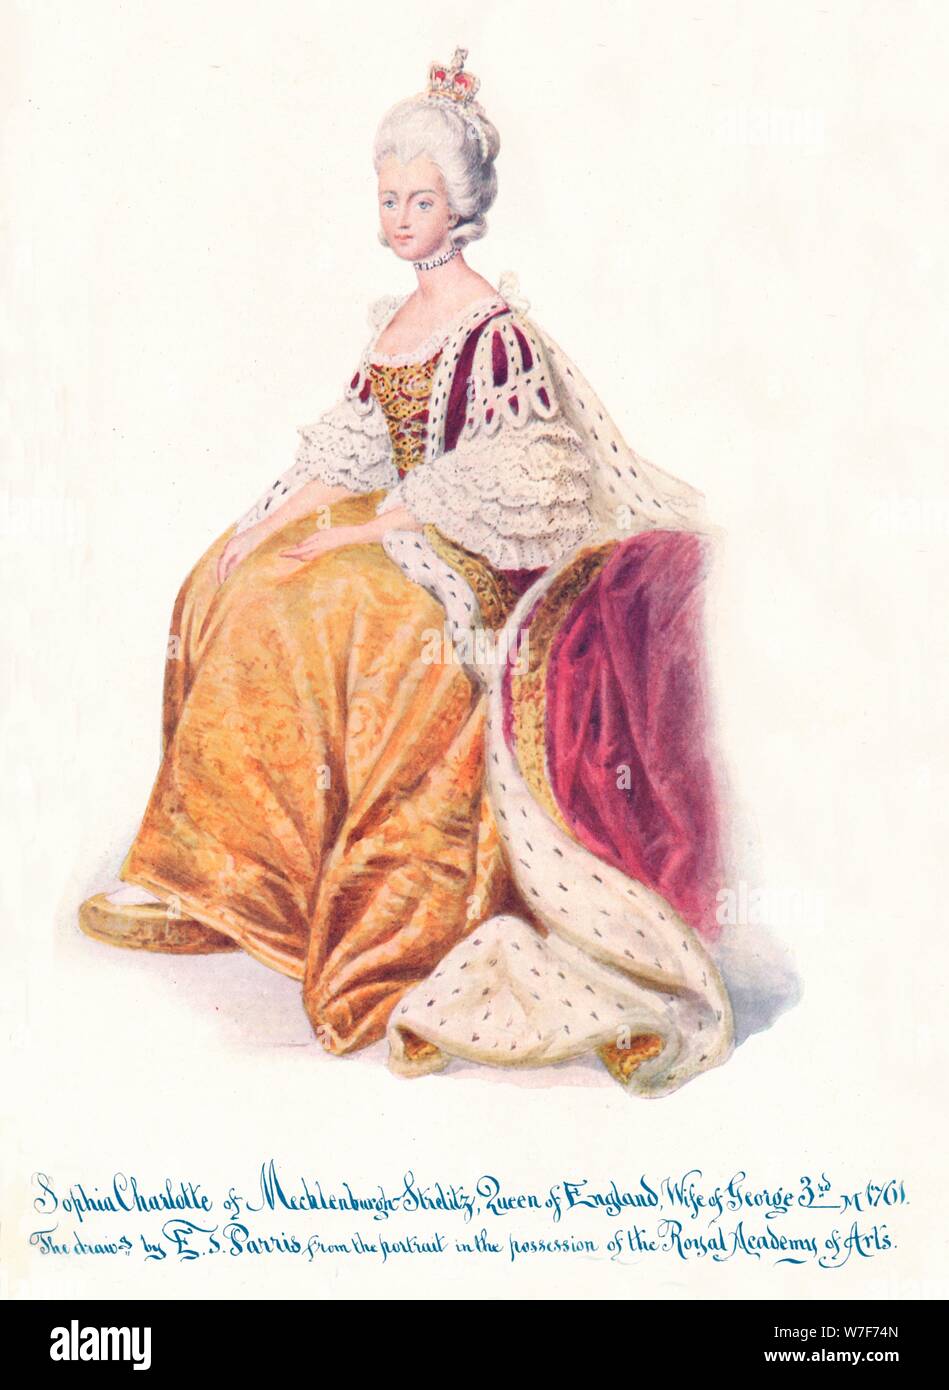 'Sophía Charlotte de Mecklenburgh Strellitz, Reina de Inglaterra, esposa de George 3rd", 1911. Artista: Desconocido. Foto de stock